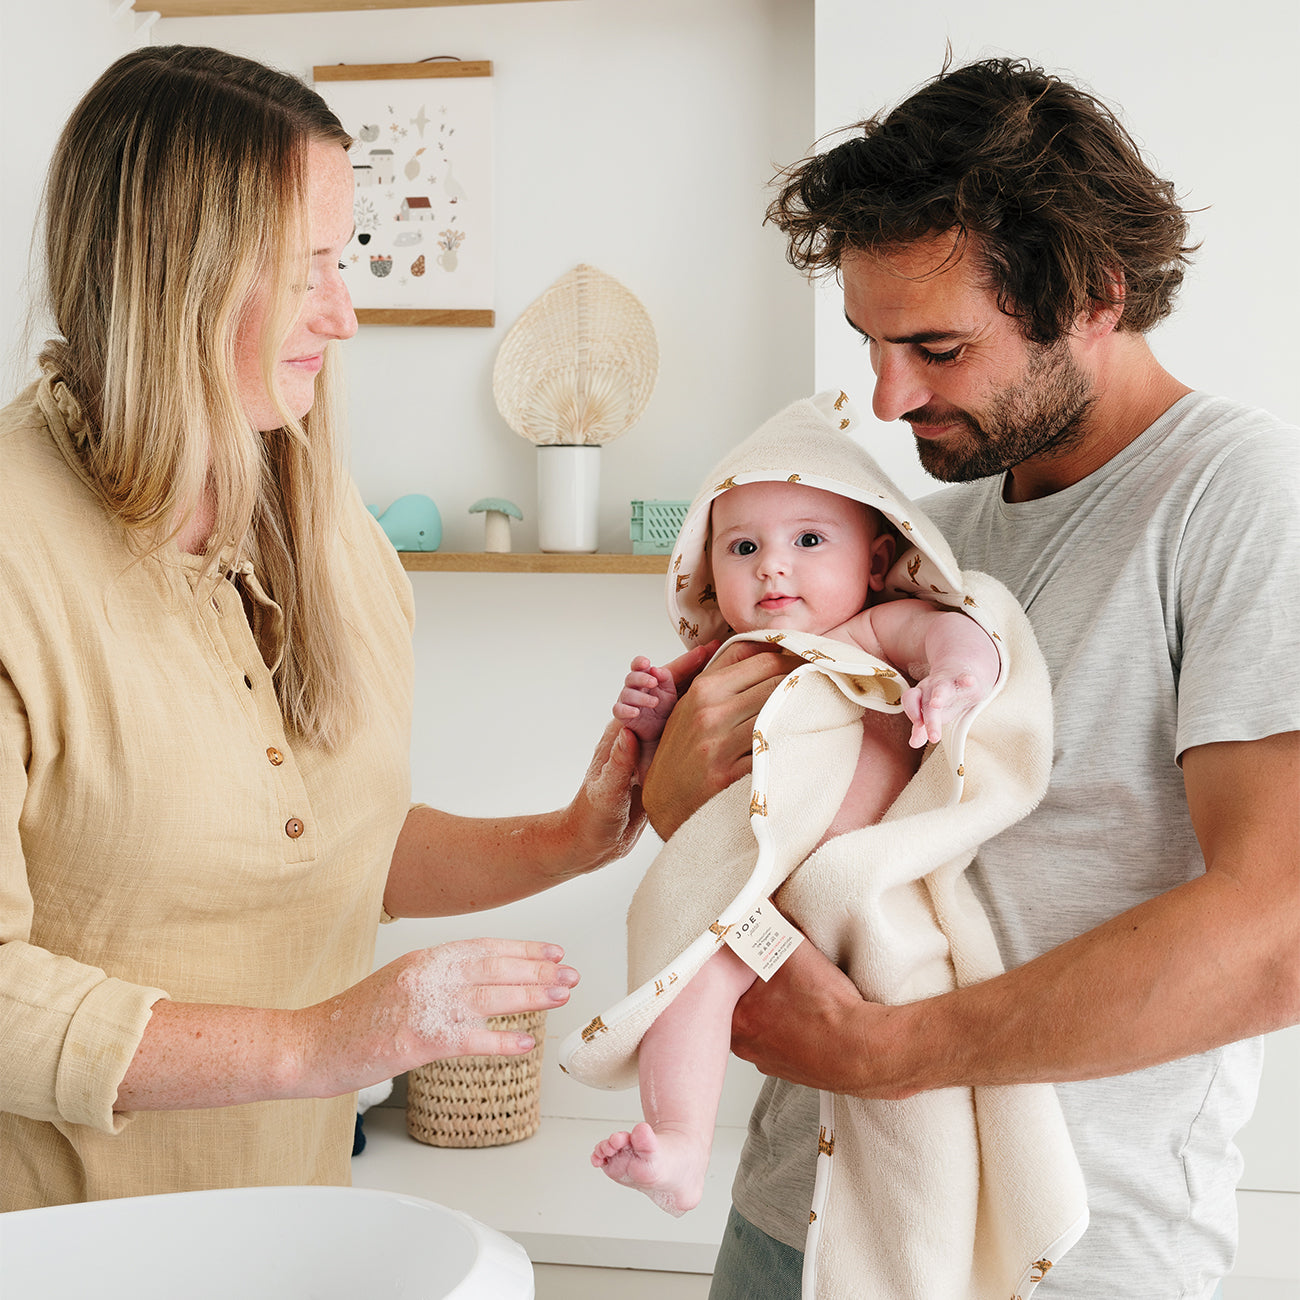 Les croûtes de lait chez le nourrisson : pourquoi ? que faire ? - Bébé M